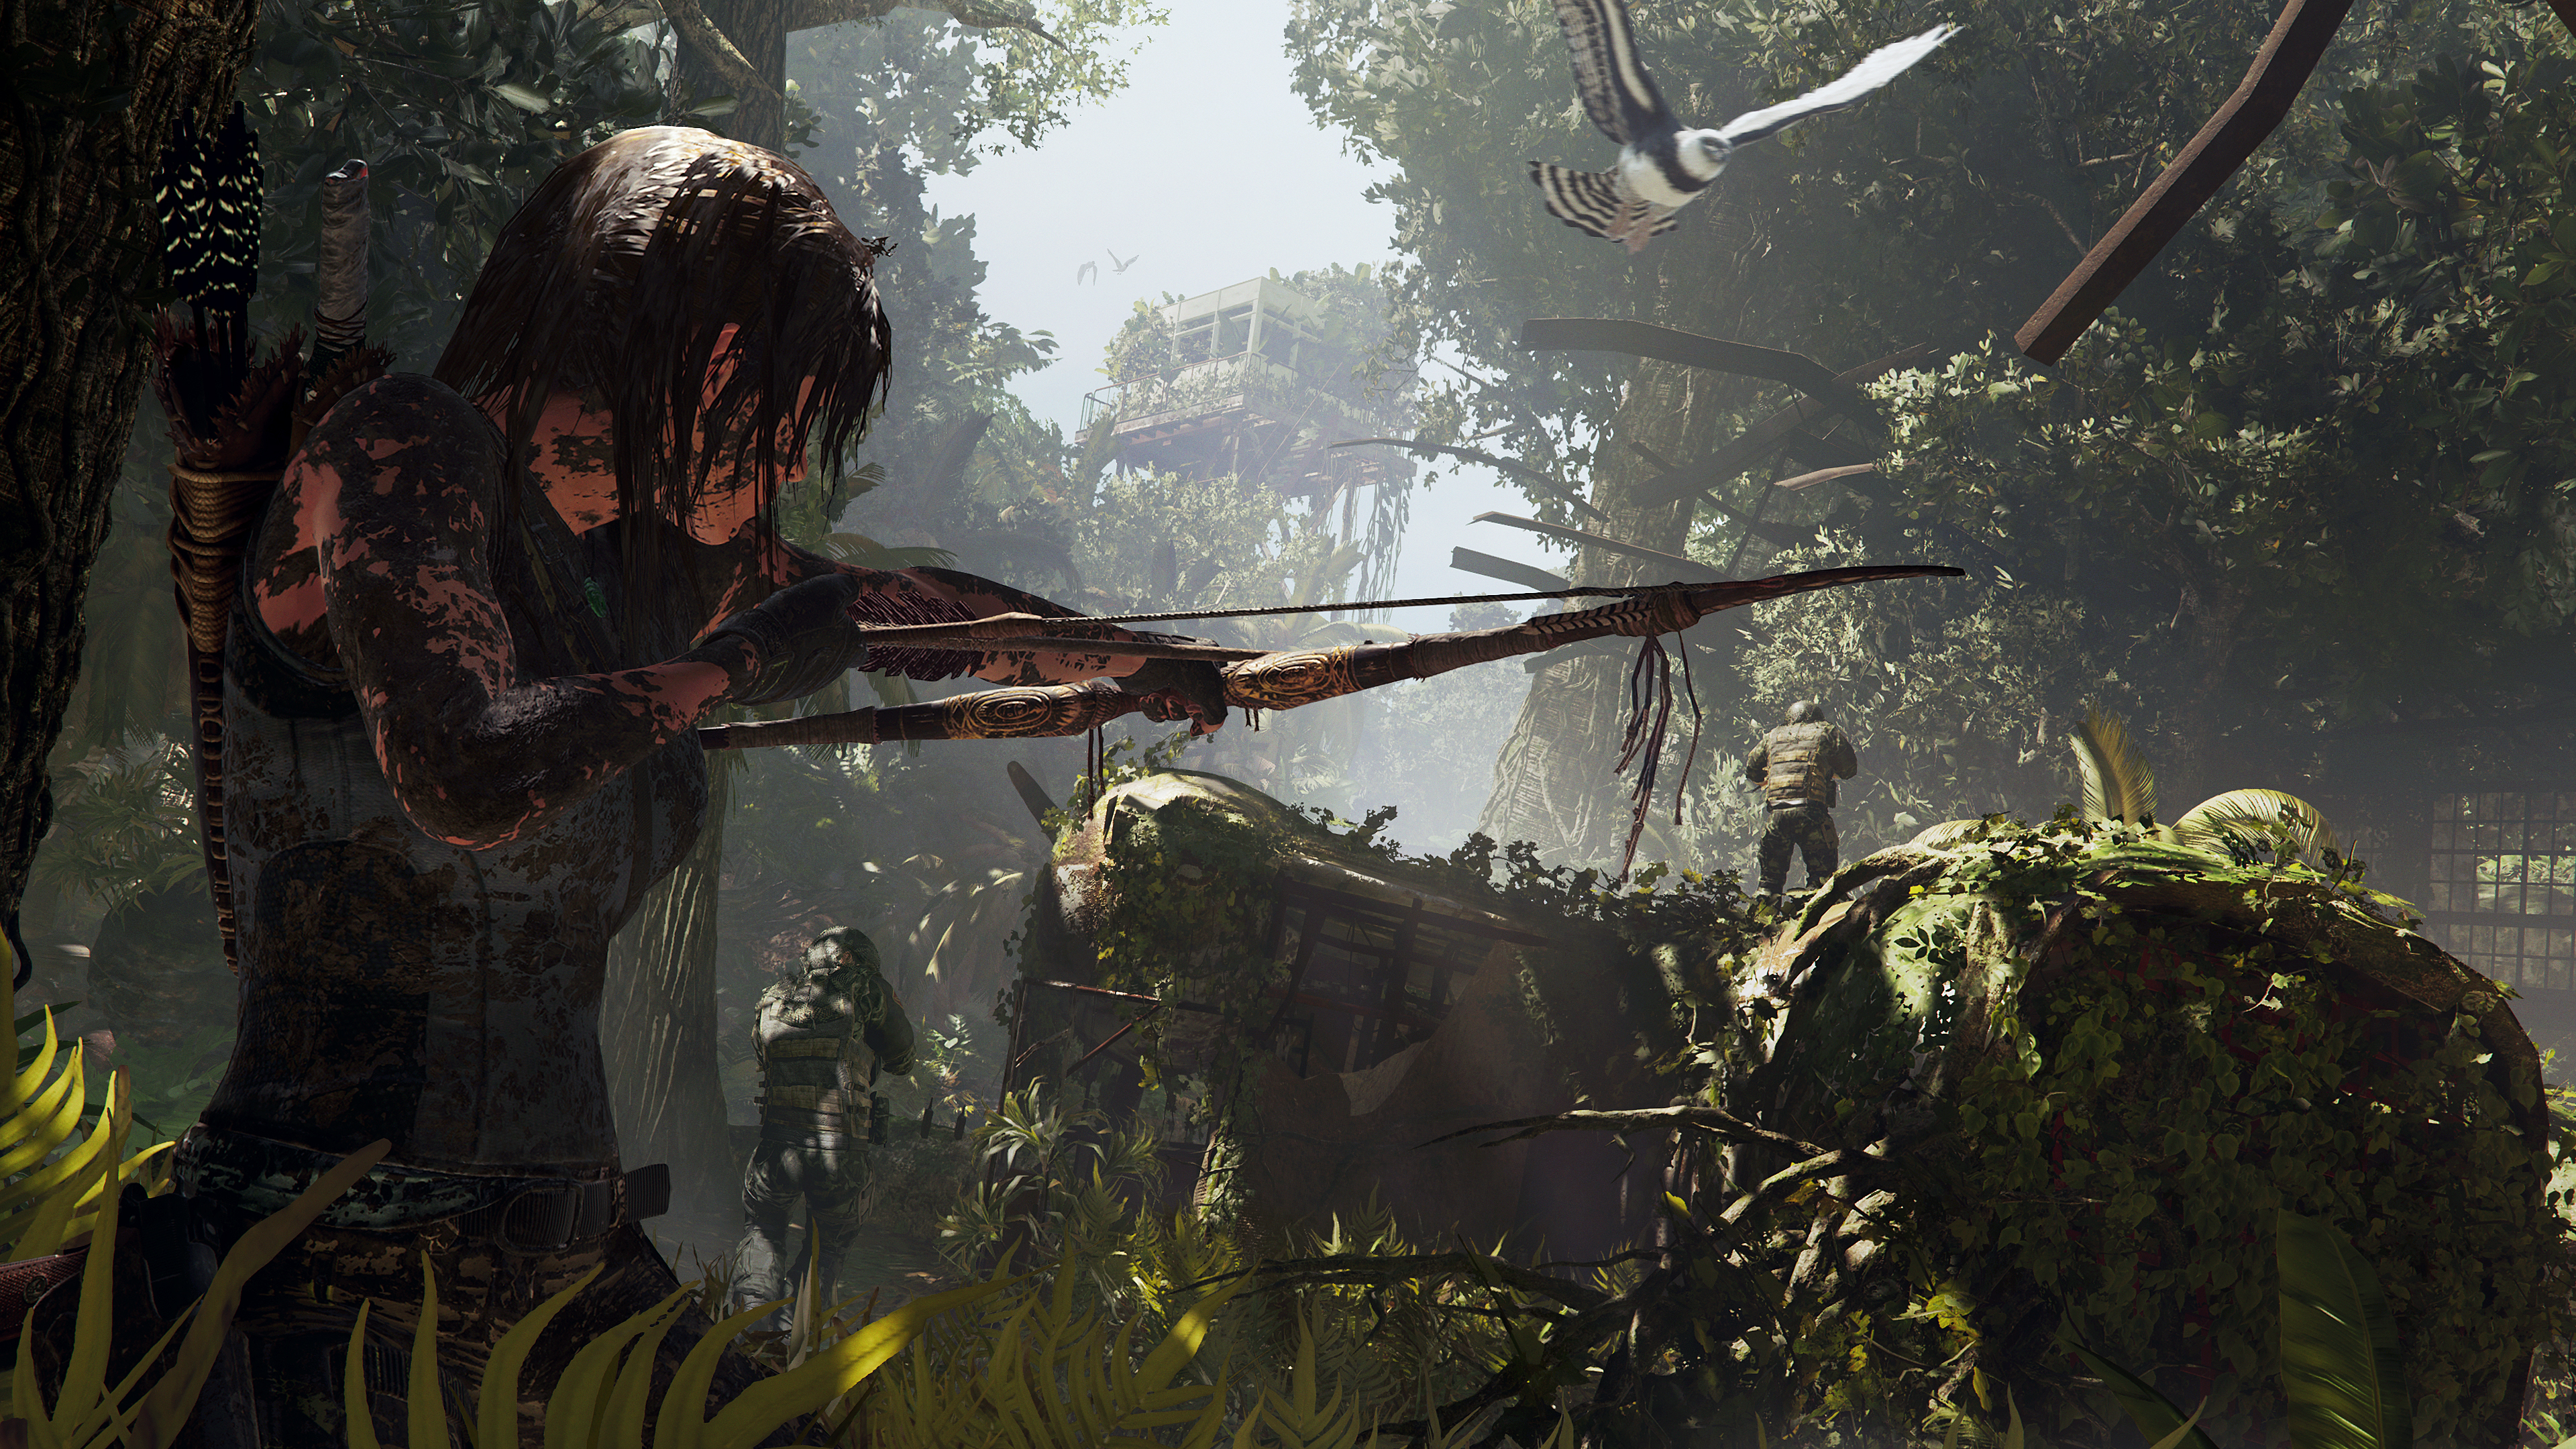 Immagine pubblicata in relazione al seguente contenuto: Nuovi gameplay trailers e screenshots del game Shadow of the Tomb Raider | Nome immagine: news28511_Shadow-of-the-Tomb-Raider-Screenshot_2.jpg